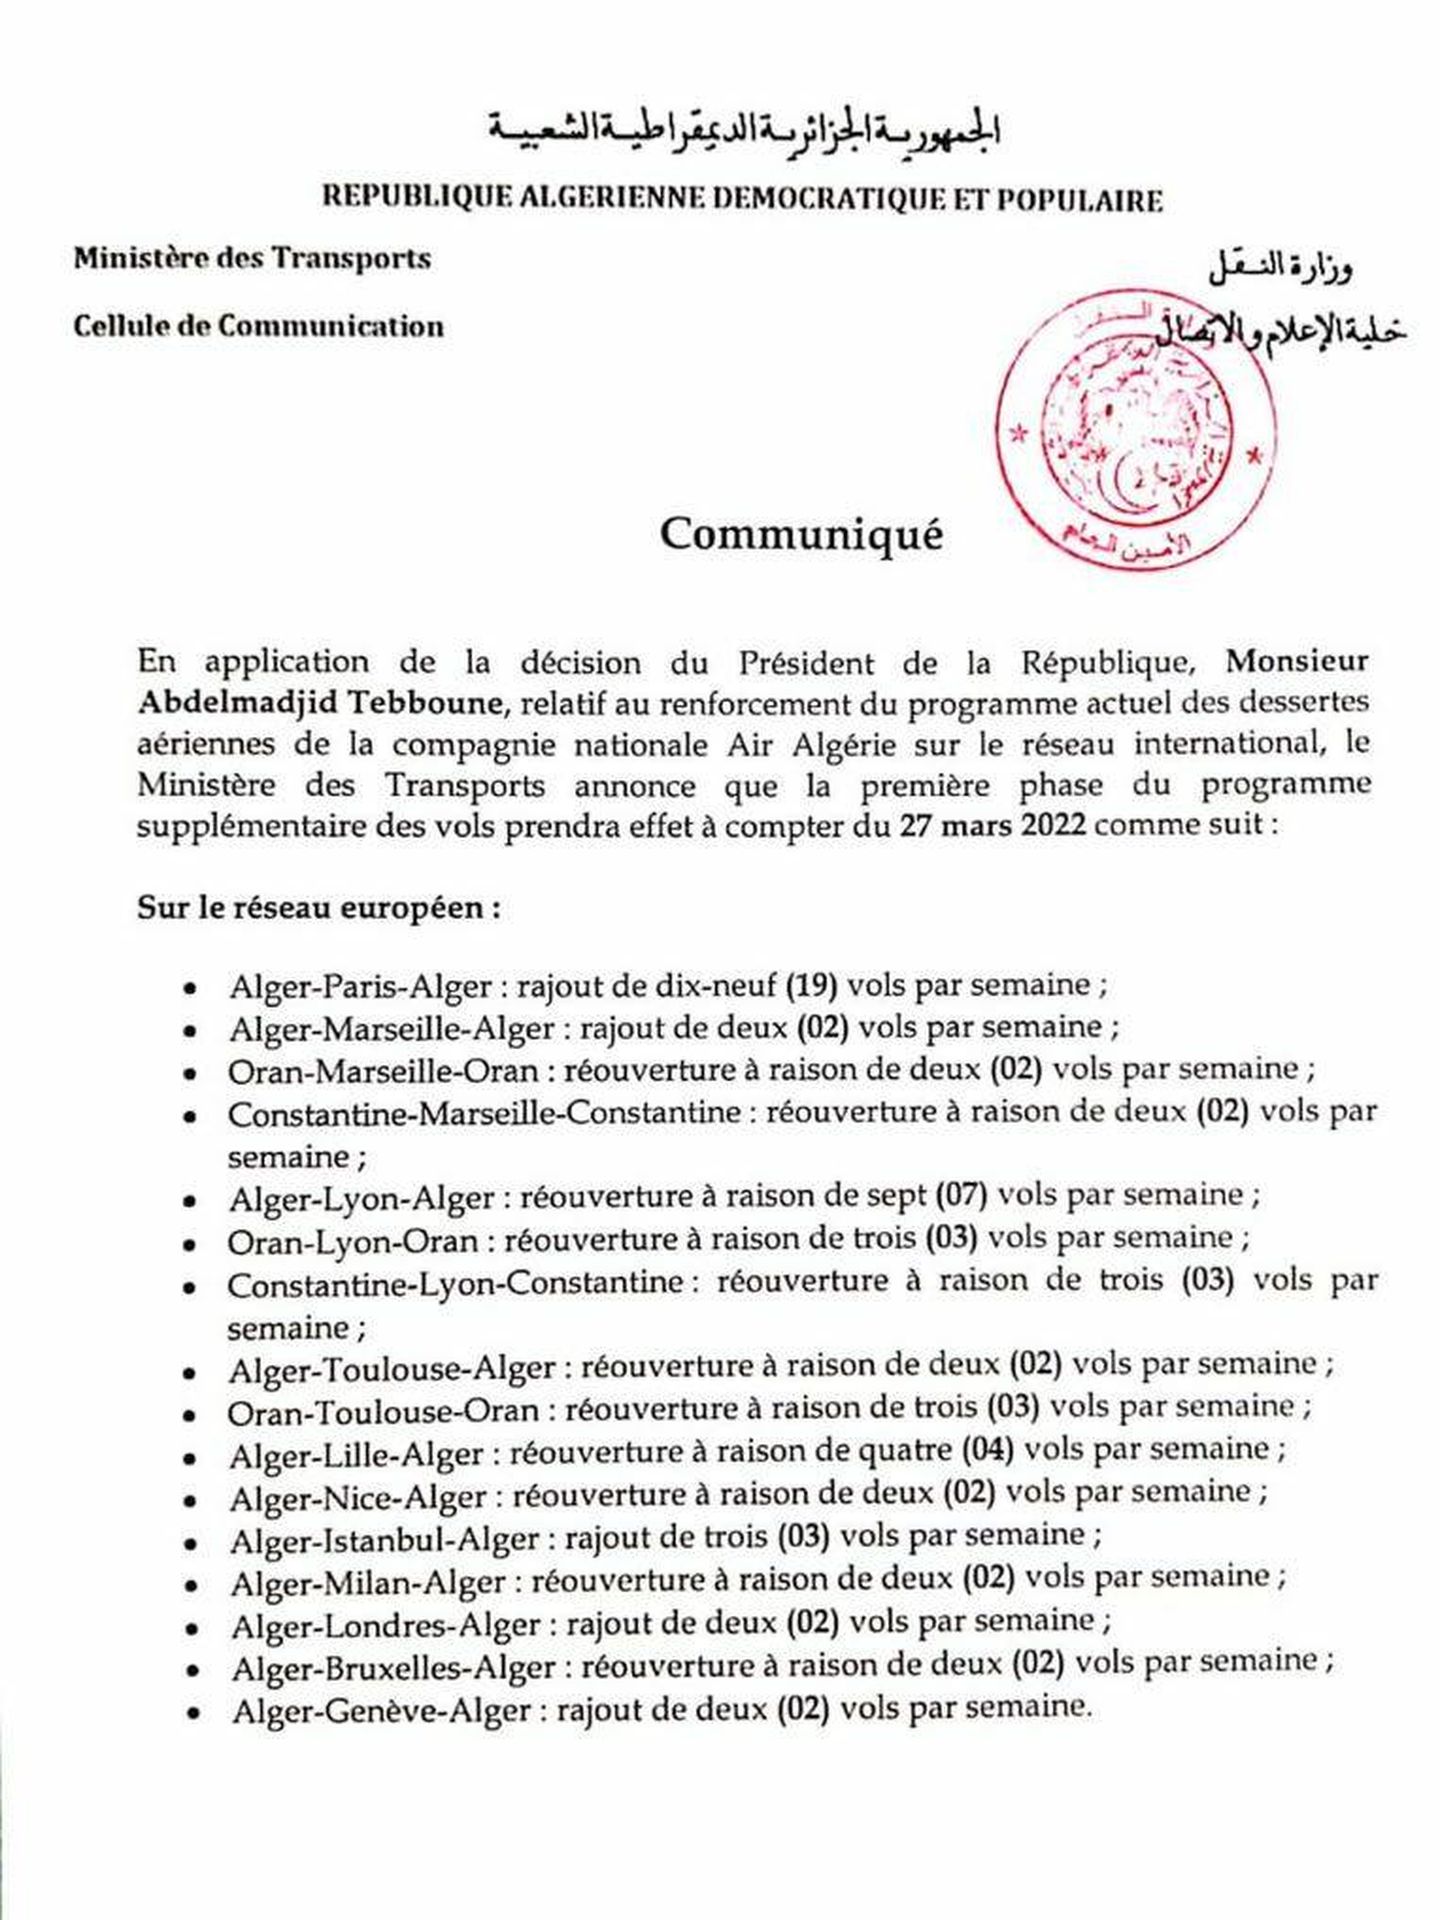 Documento del Ministerio de Transportes de Argelia anunciando la reanudación de los vuelos de Air Algérie que excluye a España.